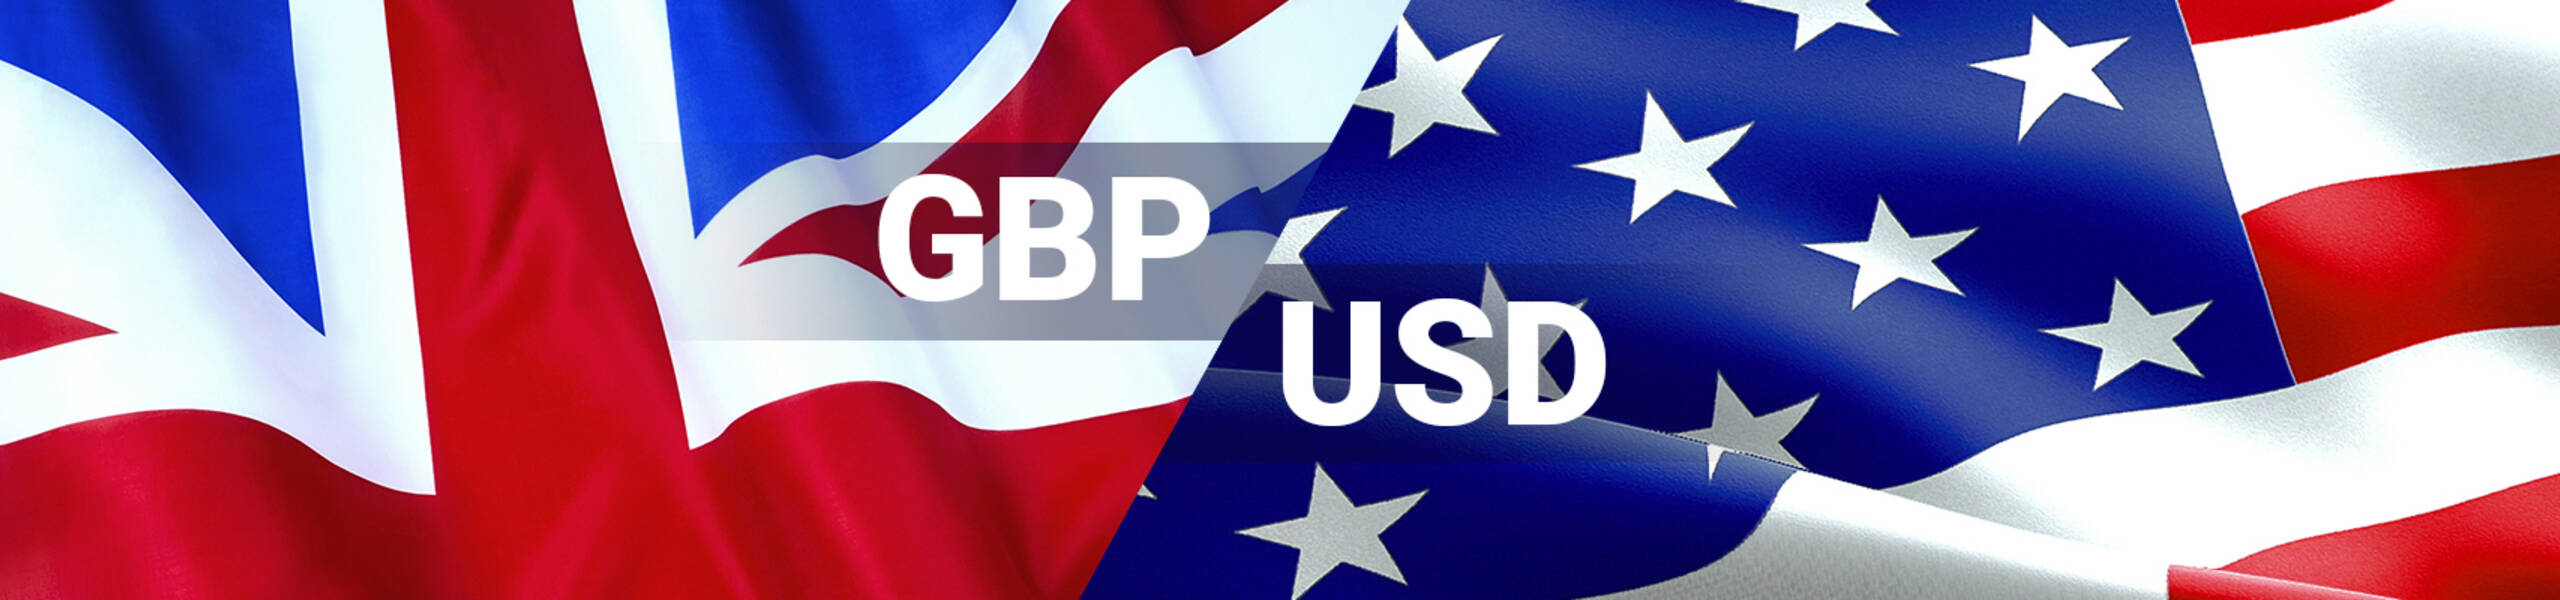 GBP/USD Previsión Semanal Septiembre 10 al 14